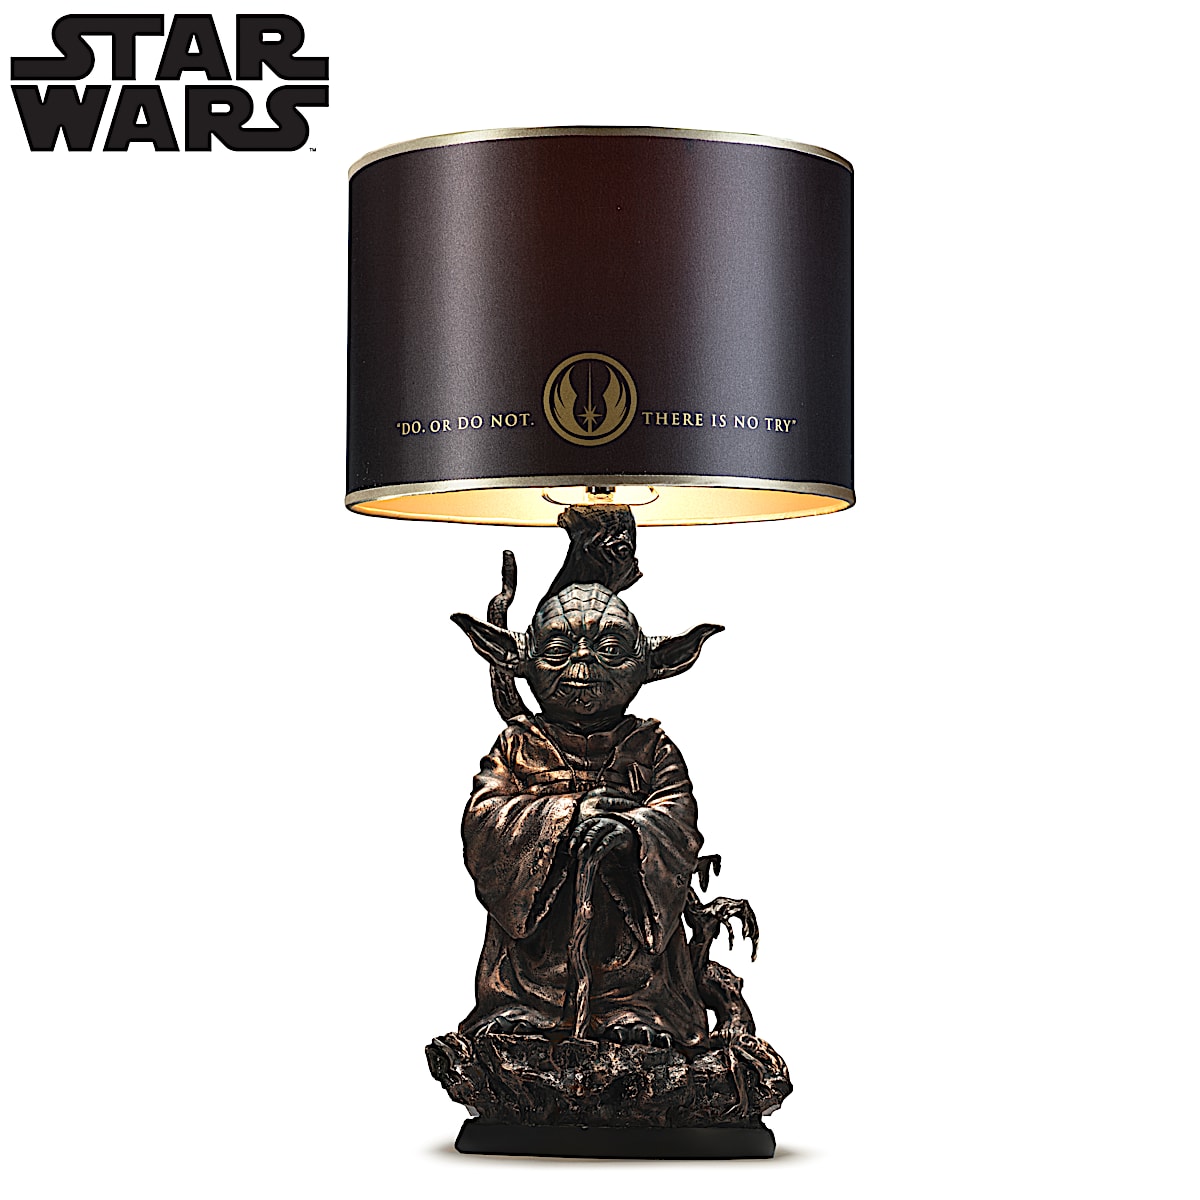 STAR WARS Jedi Master Yoda Illuminated Desk Lamp